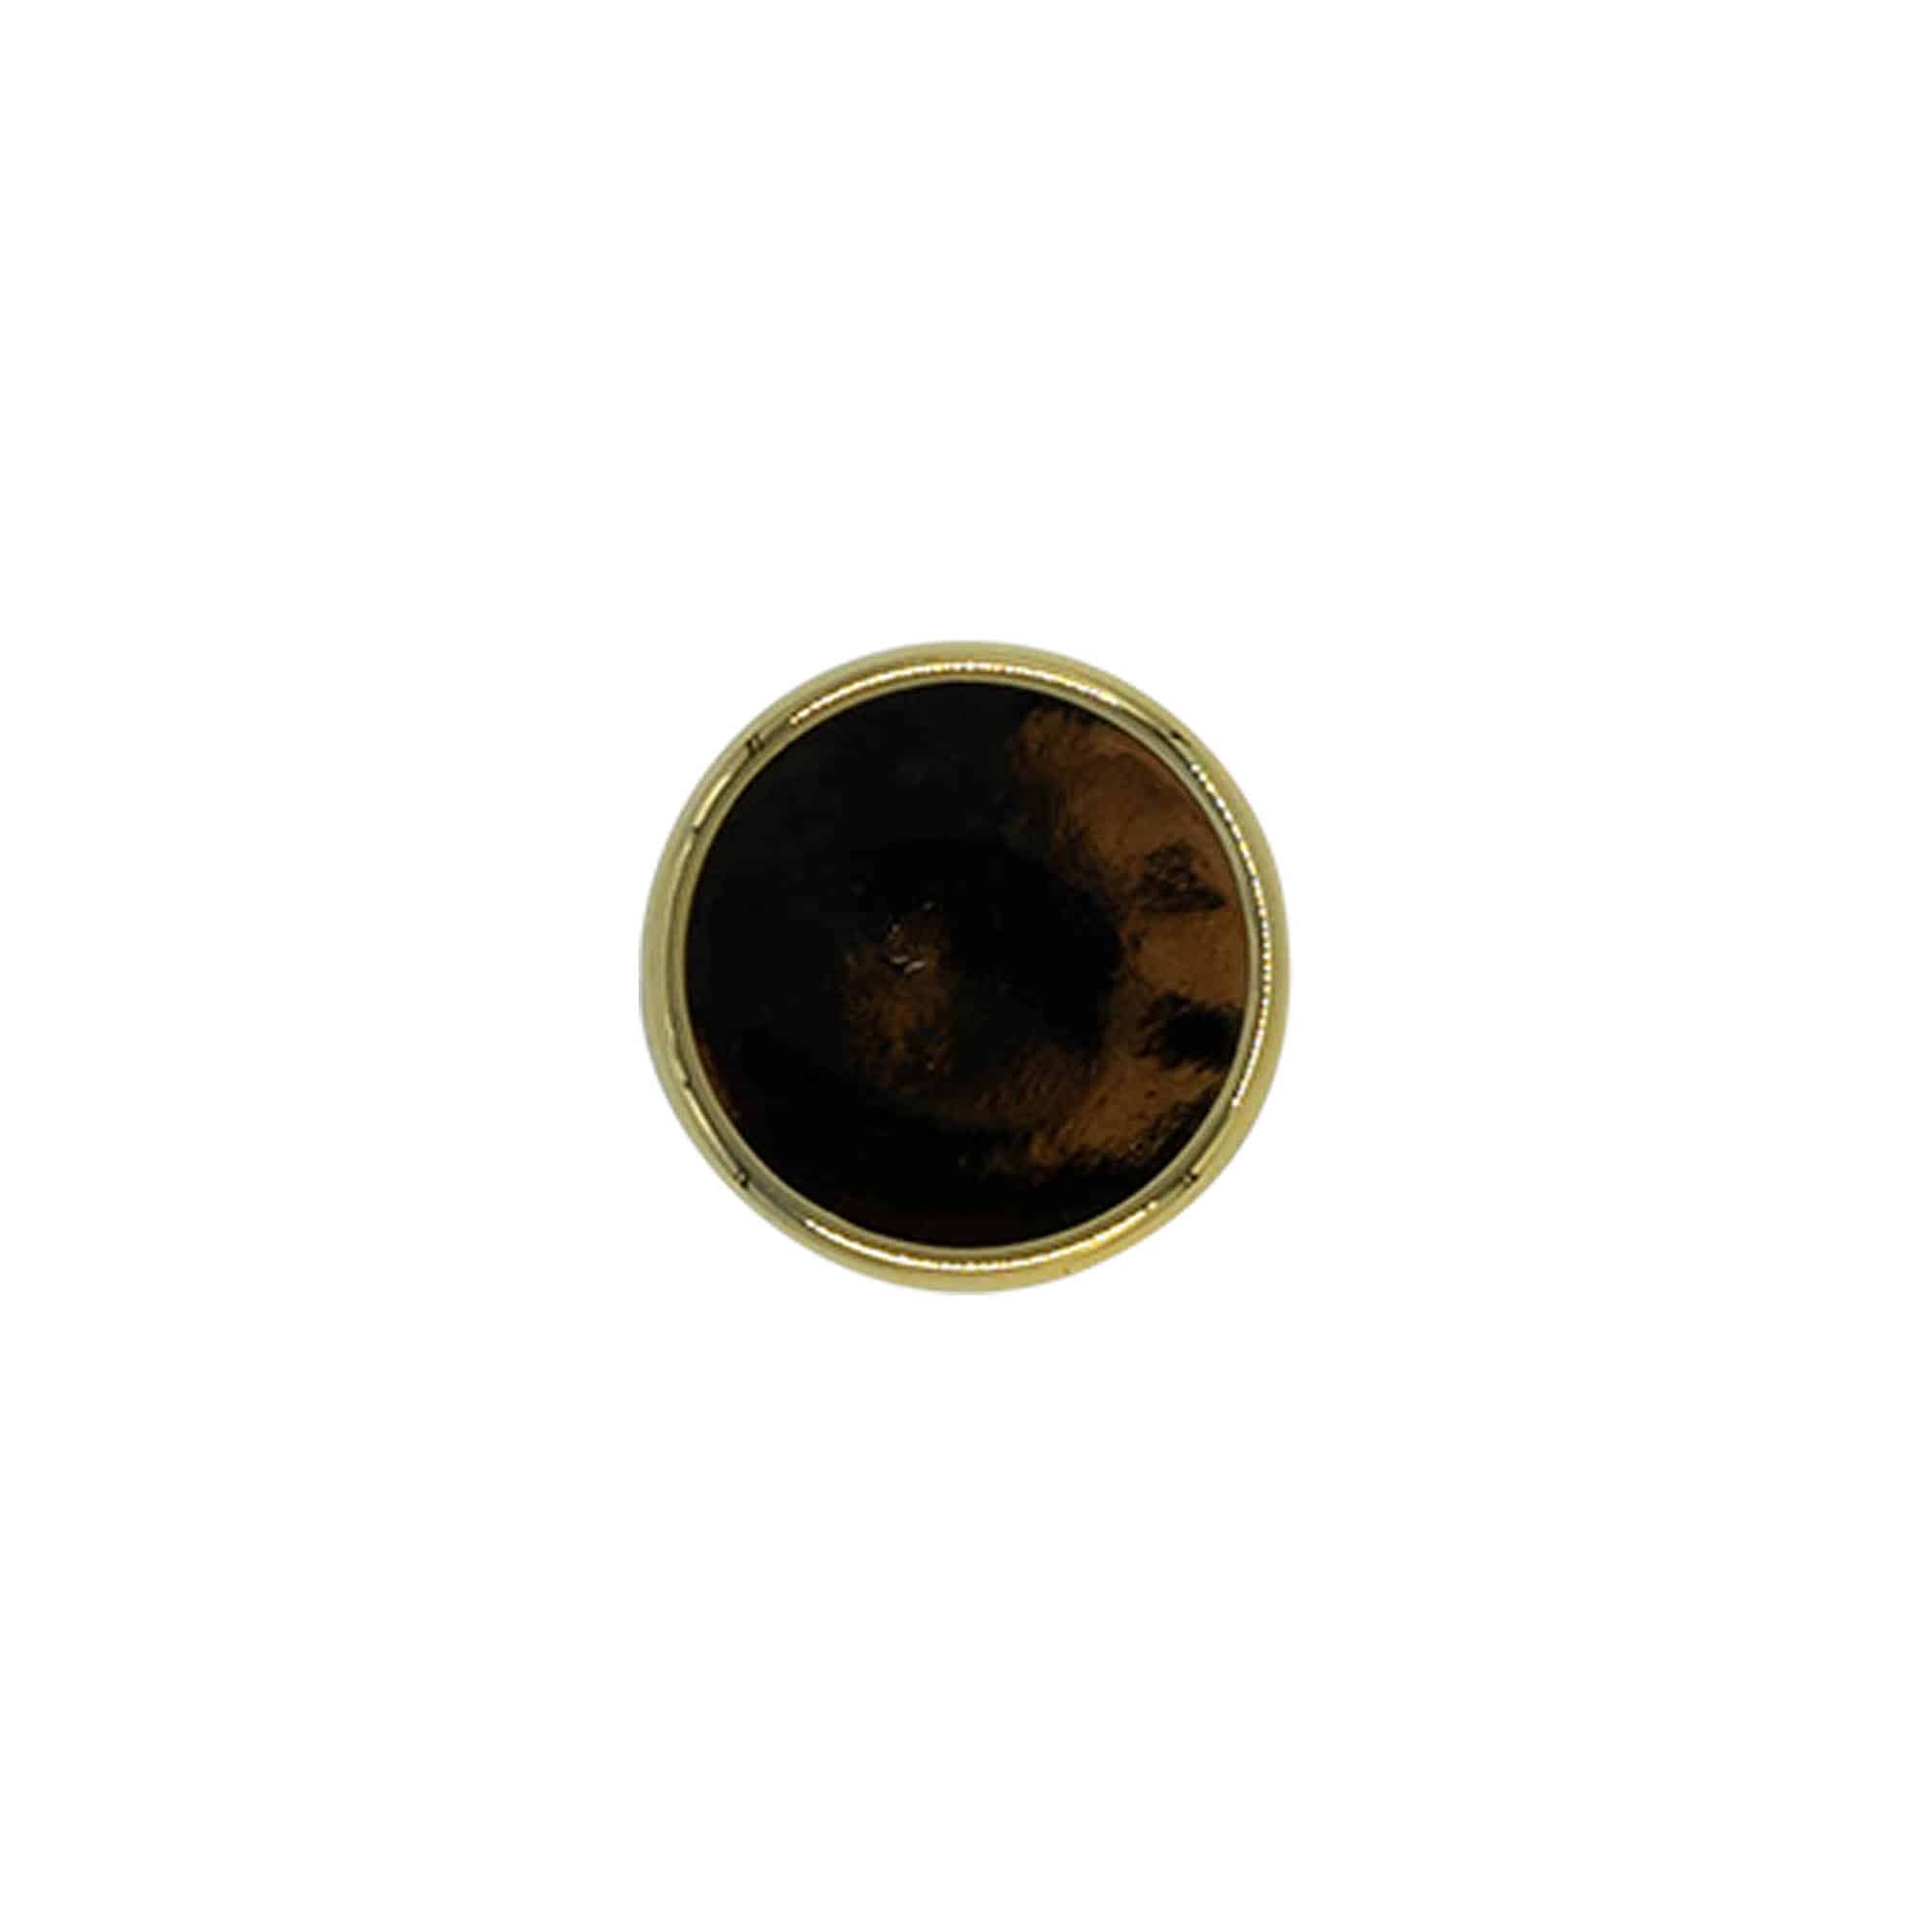 Korek z uchwytem 19 mm, tworzywo sztuczne, kolor złoty, do zamknięcia: korek